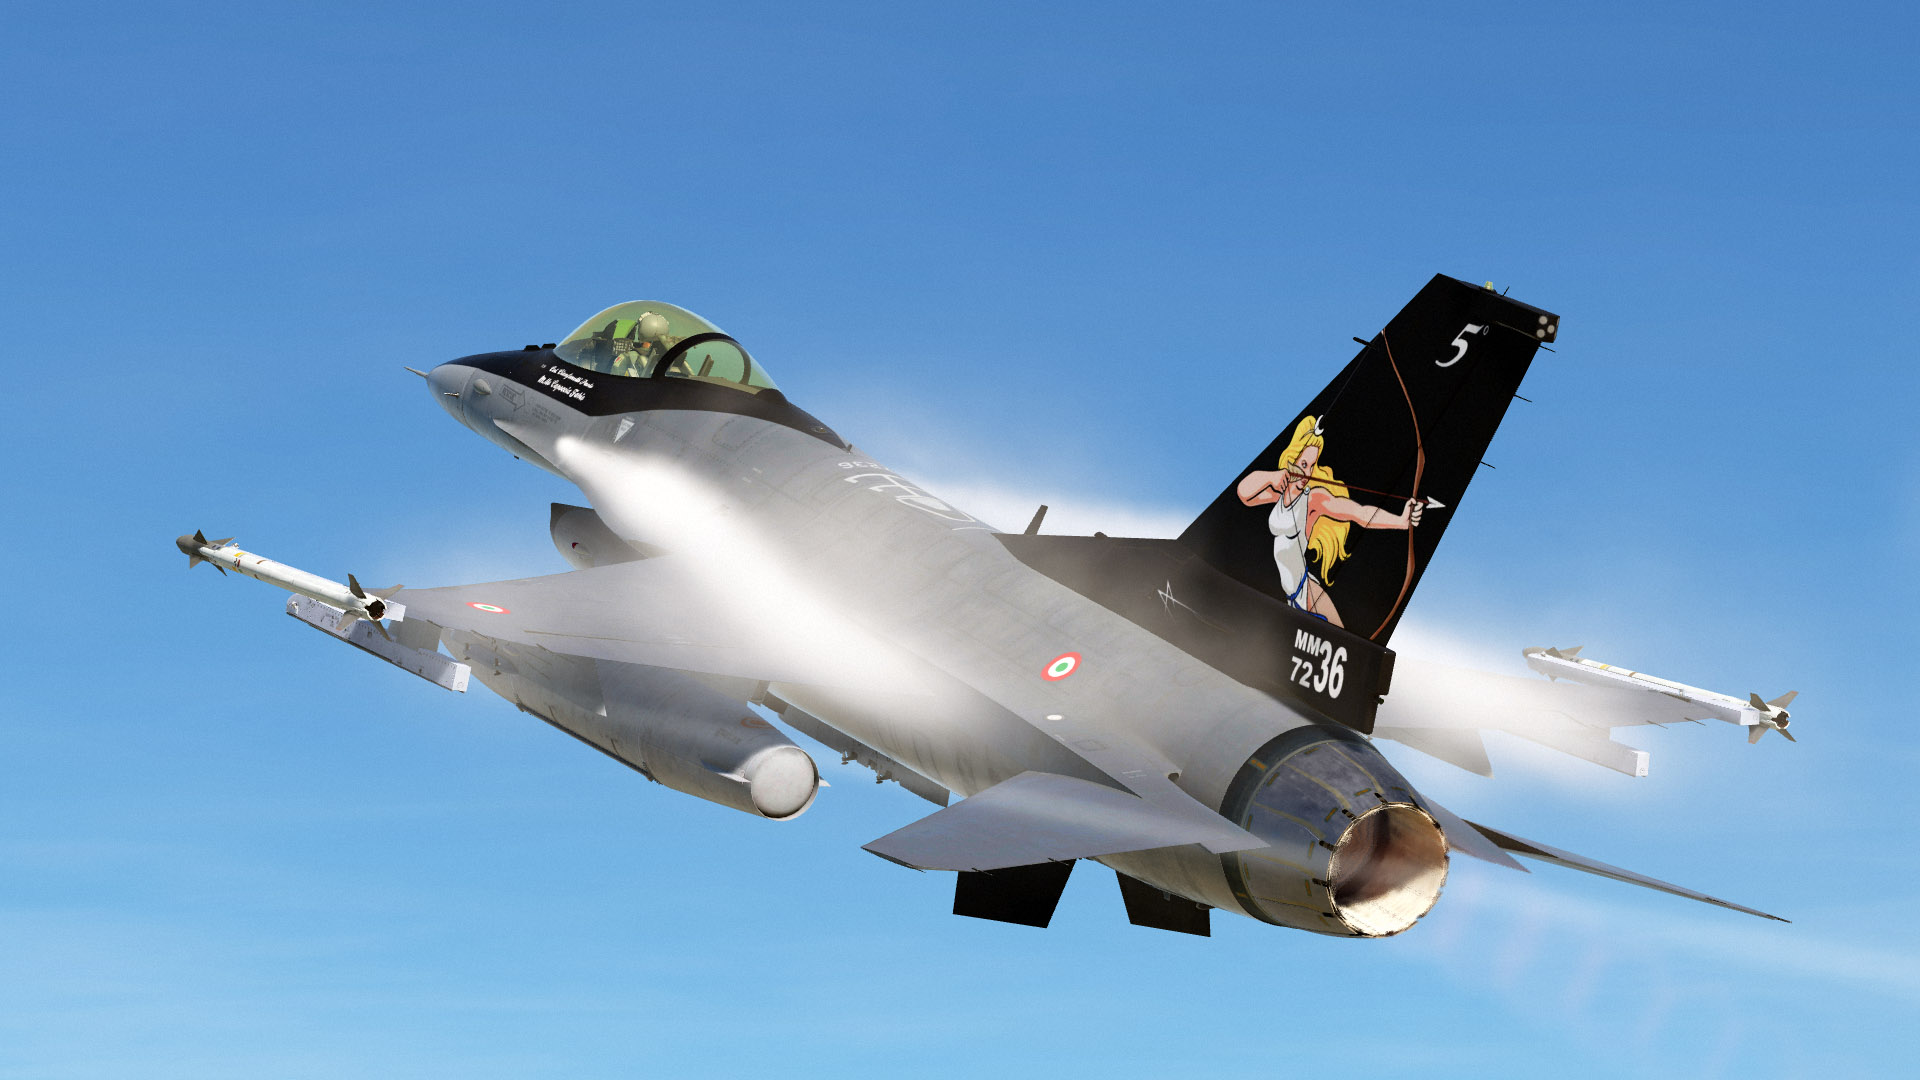 [UPDATED] AMI F16 ADF Block 15 - "L'ultima Diana" 